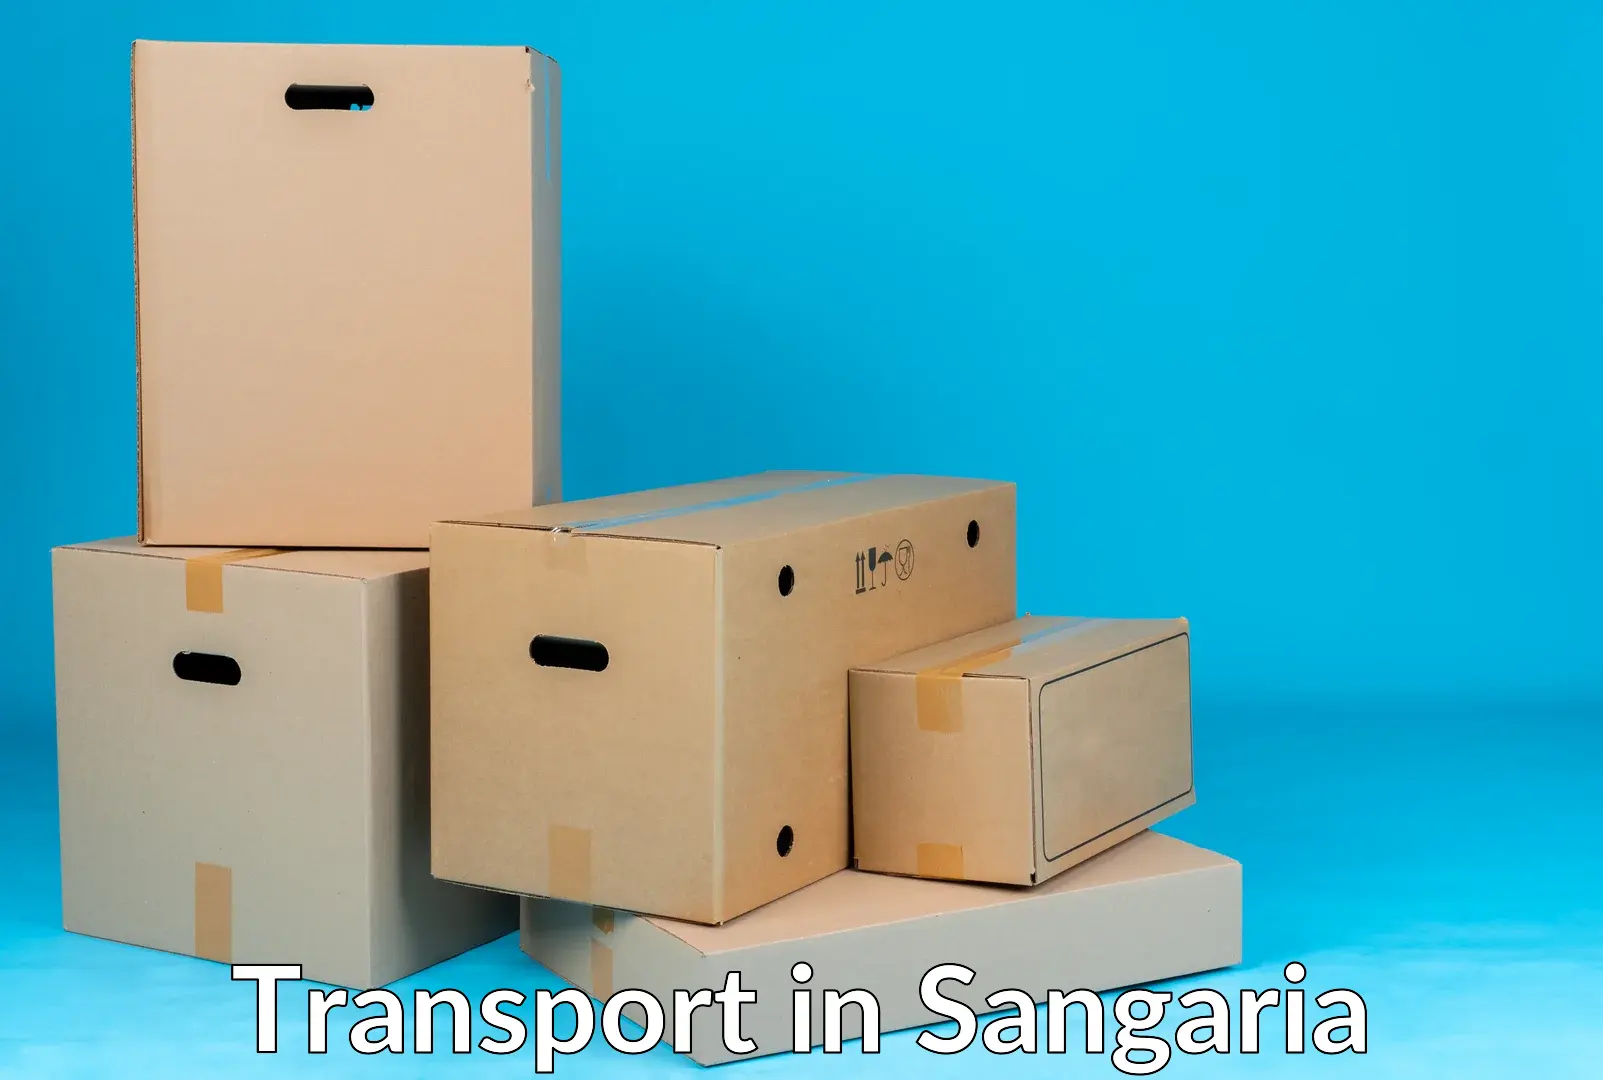 Furniture transport service in Sangaria